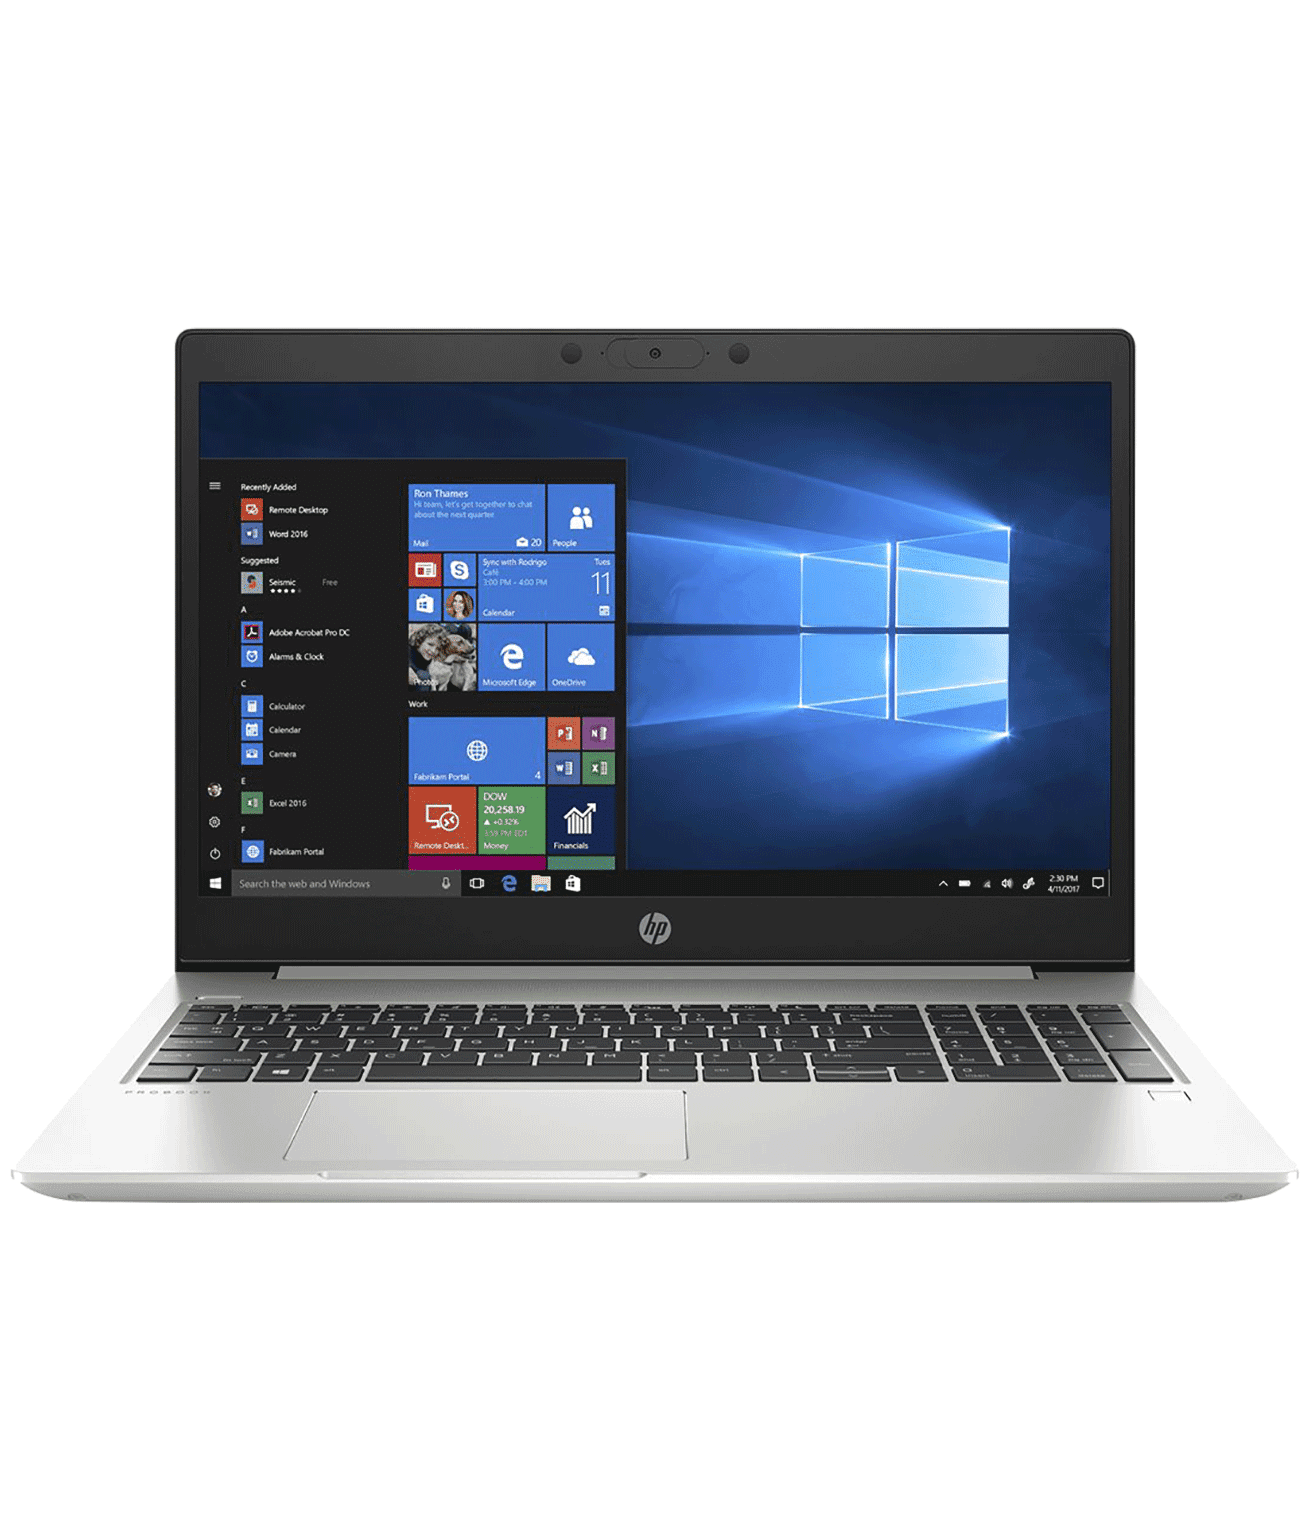 HP ProBook 455 G7 AMD Ryzen 3 4300U